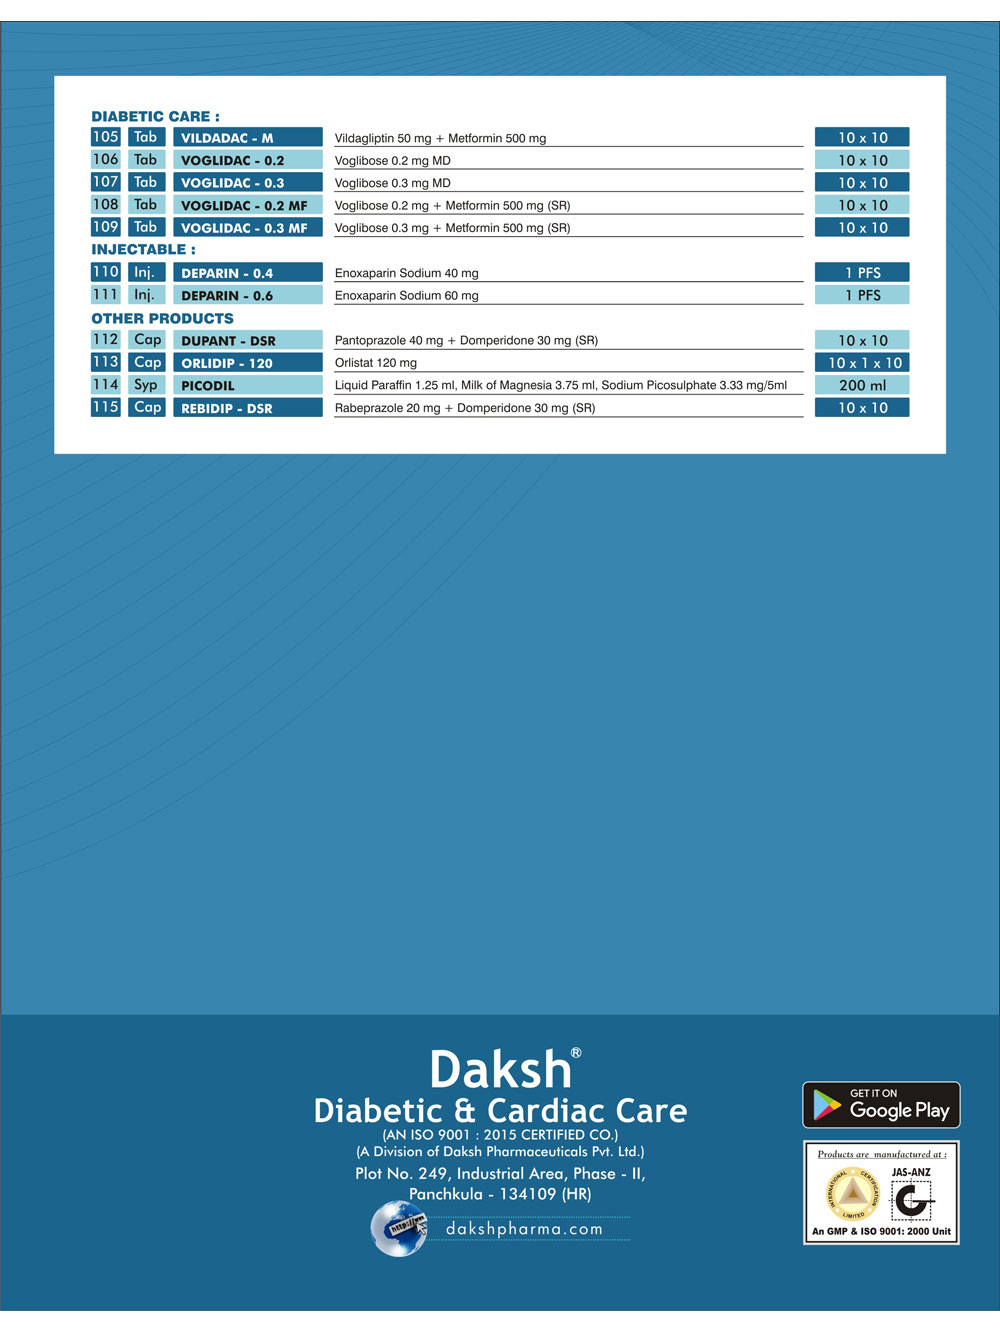 Diabetic Cardiac Care 4 - Daksh Pharma